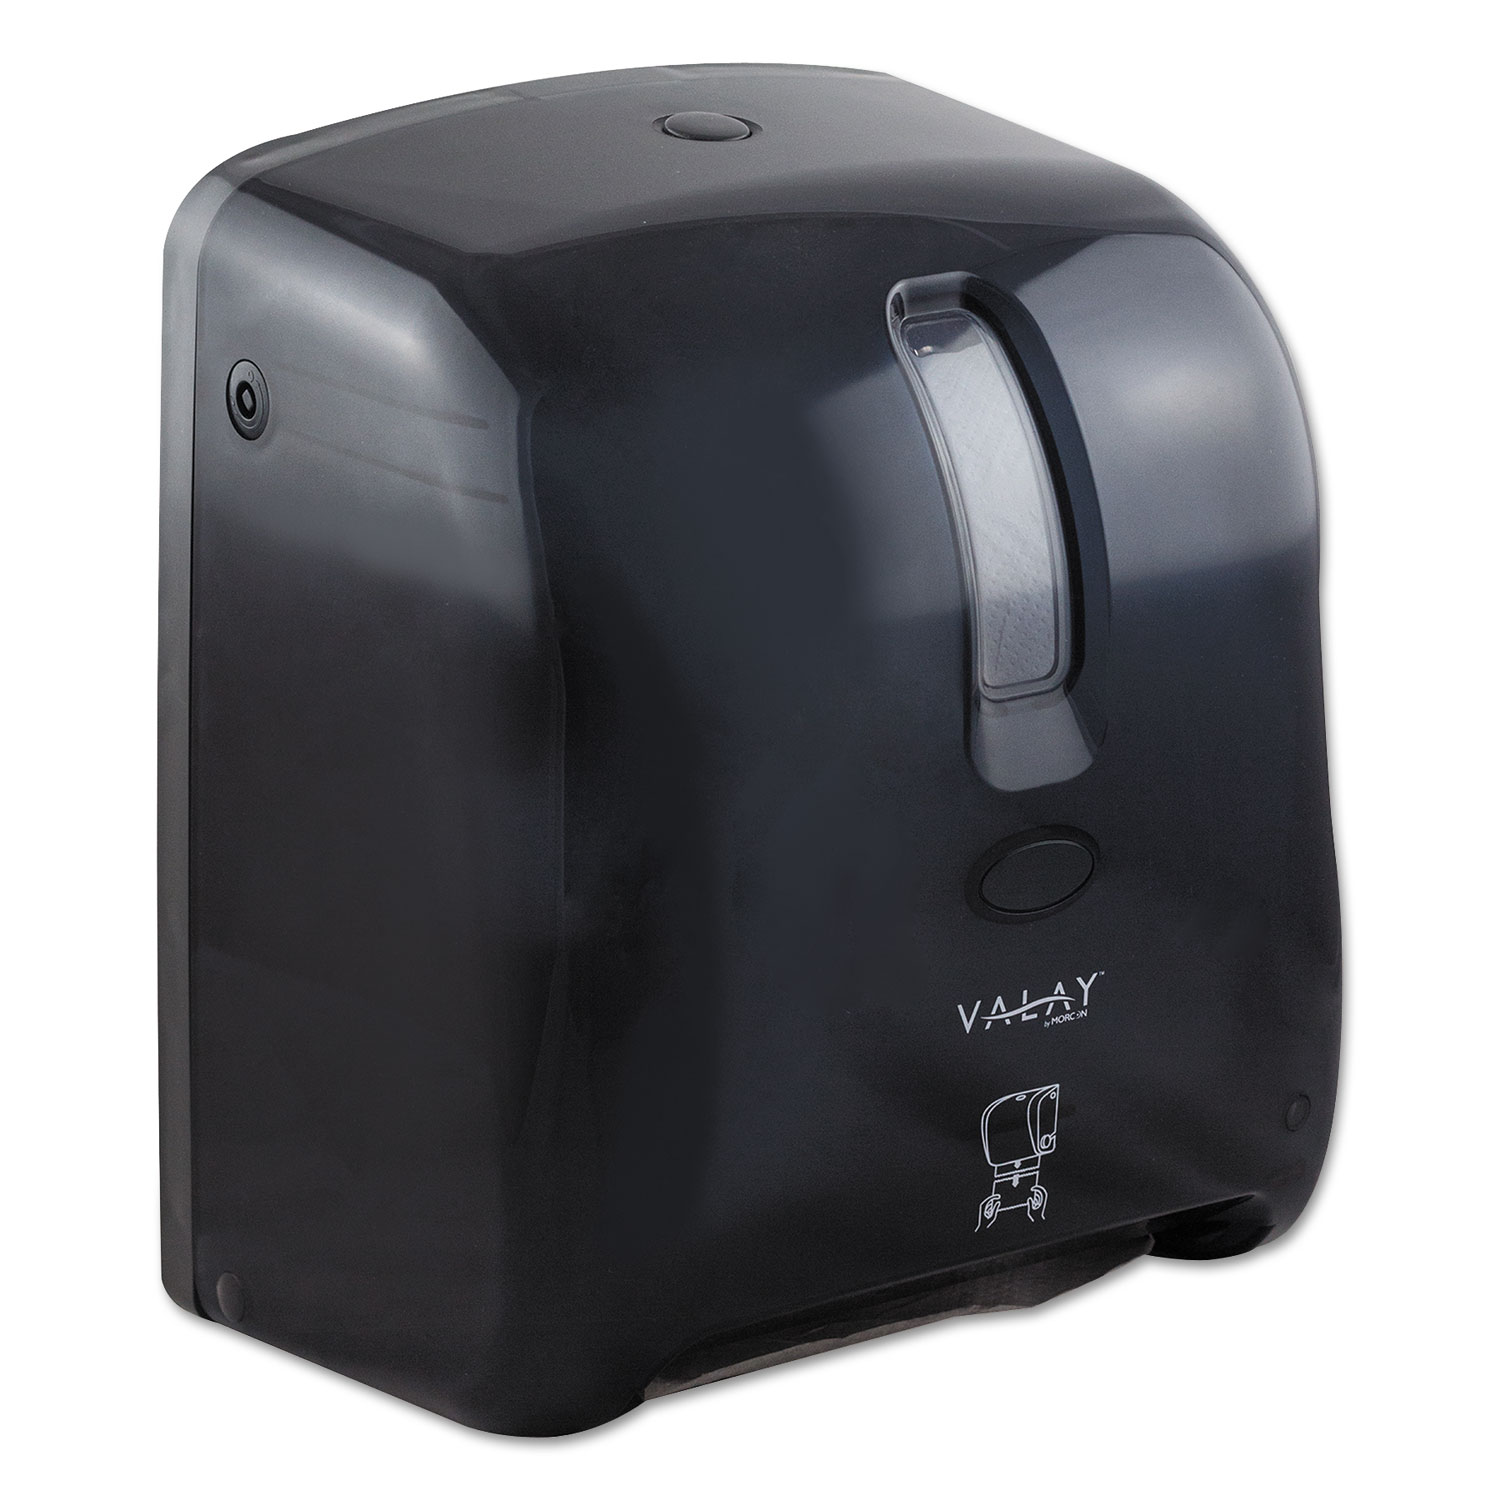 Valay Proprietary Roll Towel Dispenser, 11.75" x 14" x 8.5", Black